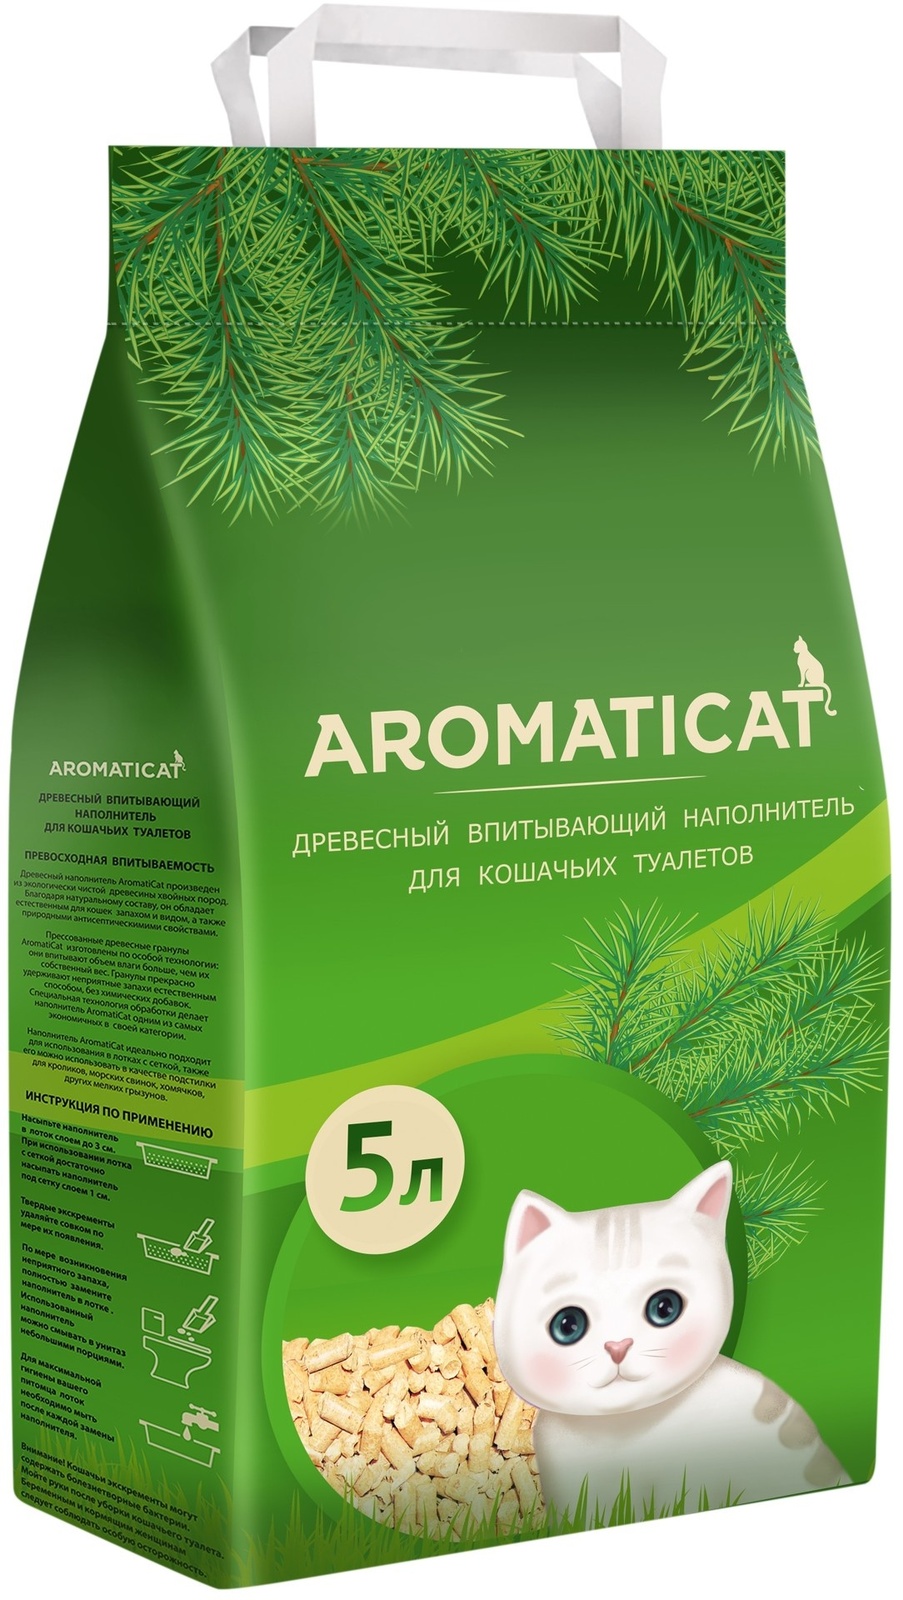 AromatiCat AromatiCat древесный впитывающий наполнитель (6 кг)